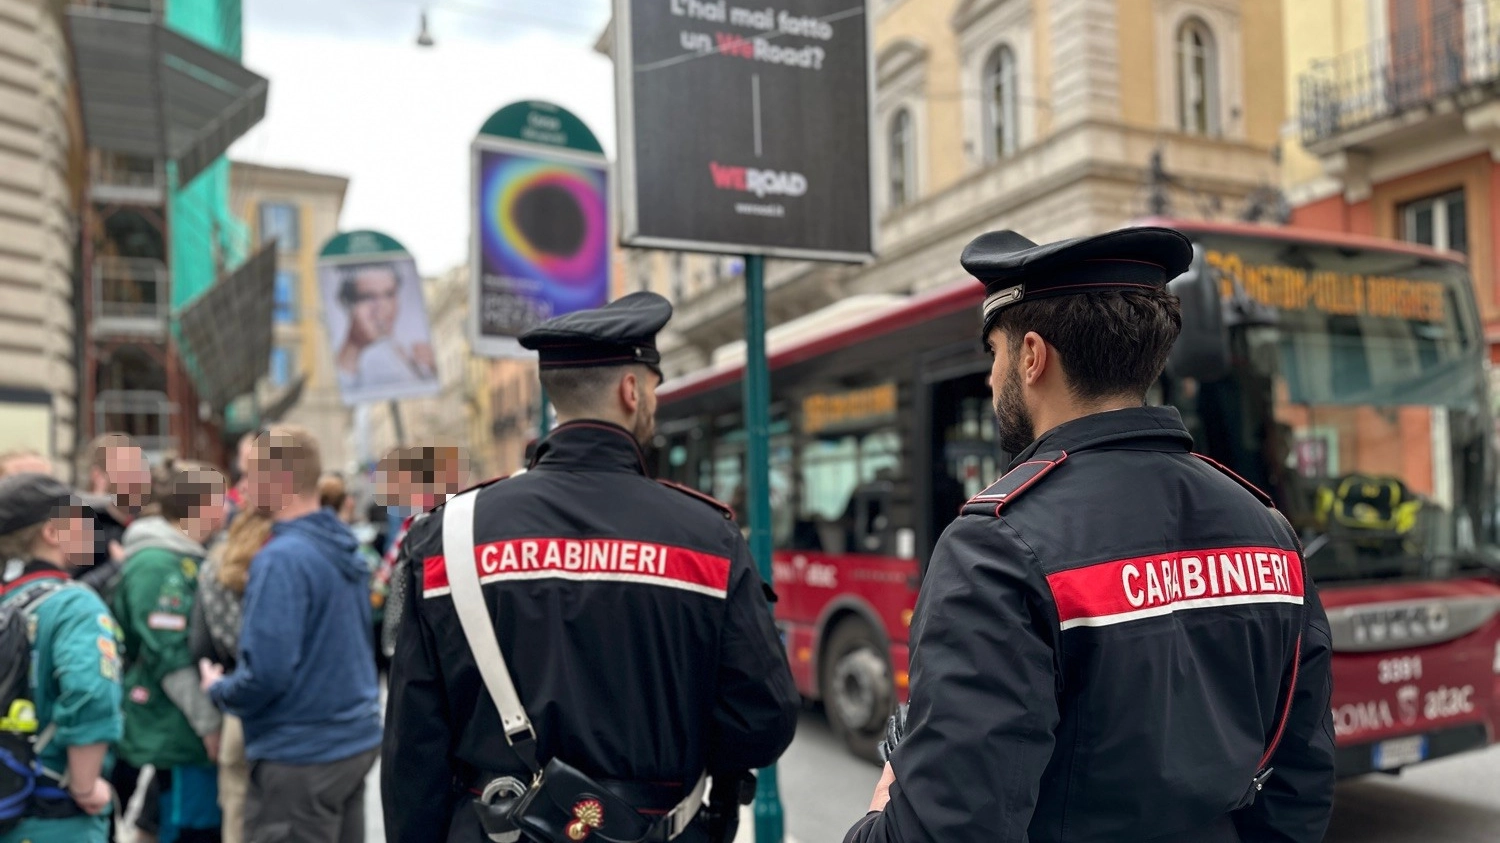 Roma, controlli dei carabinieri sui mezzi pubblici contro il fenomeno dei borseggiatori